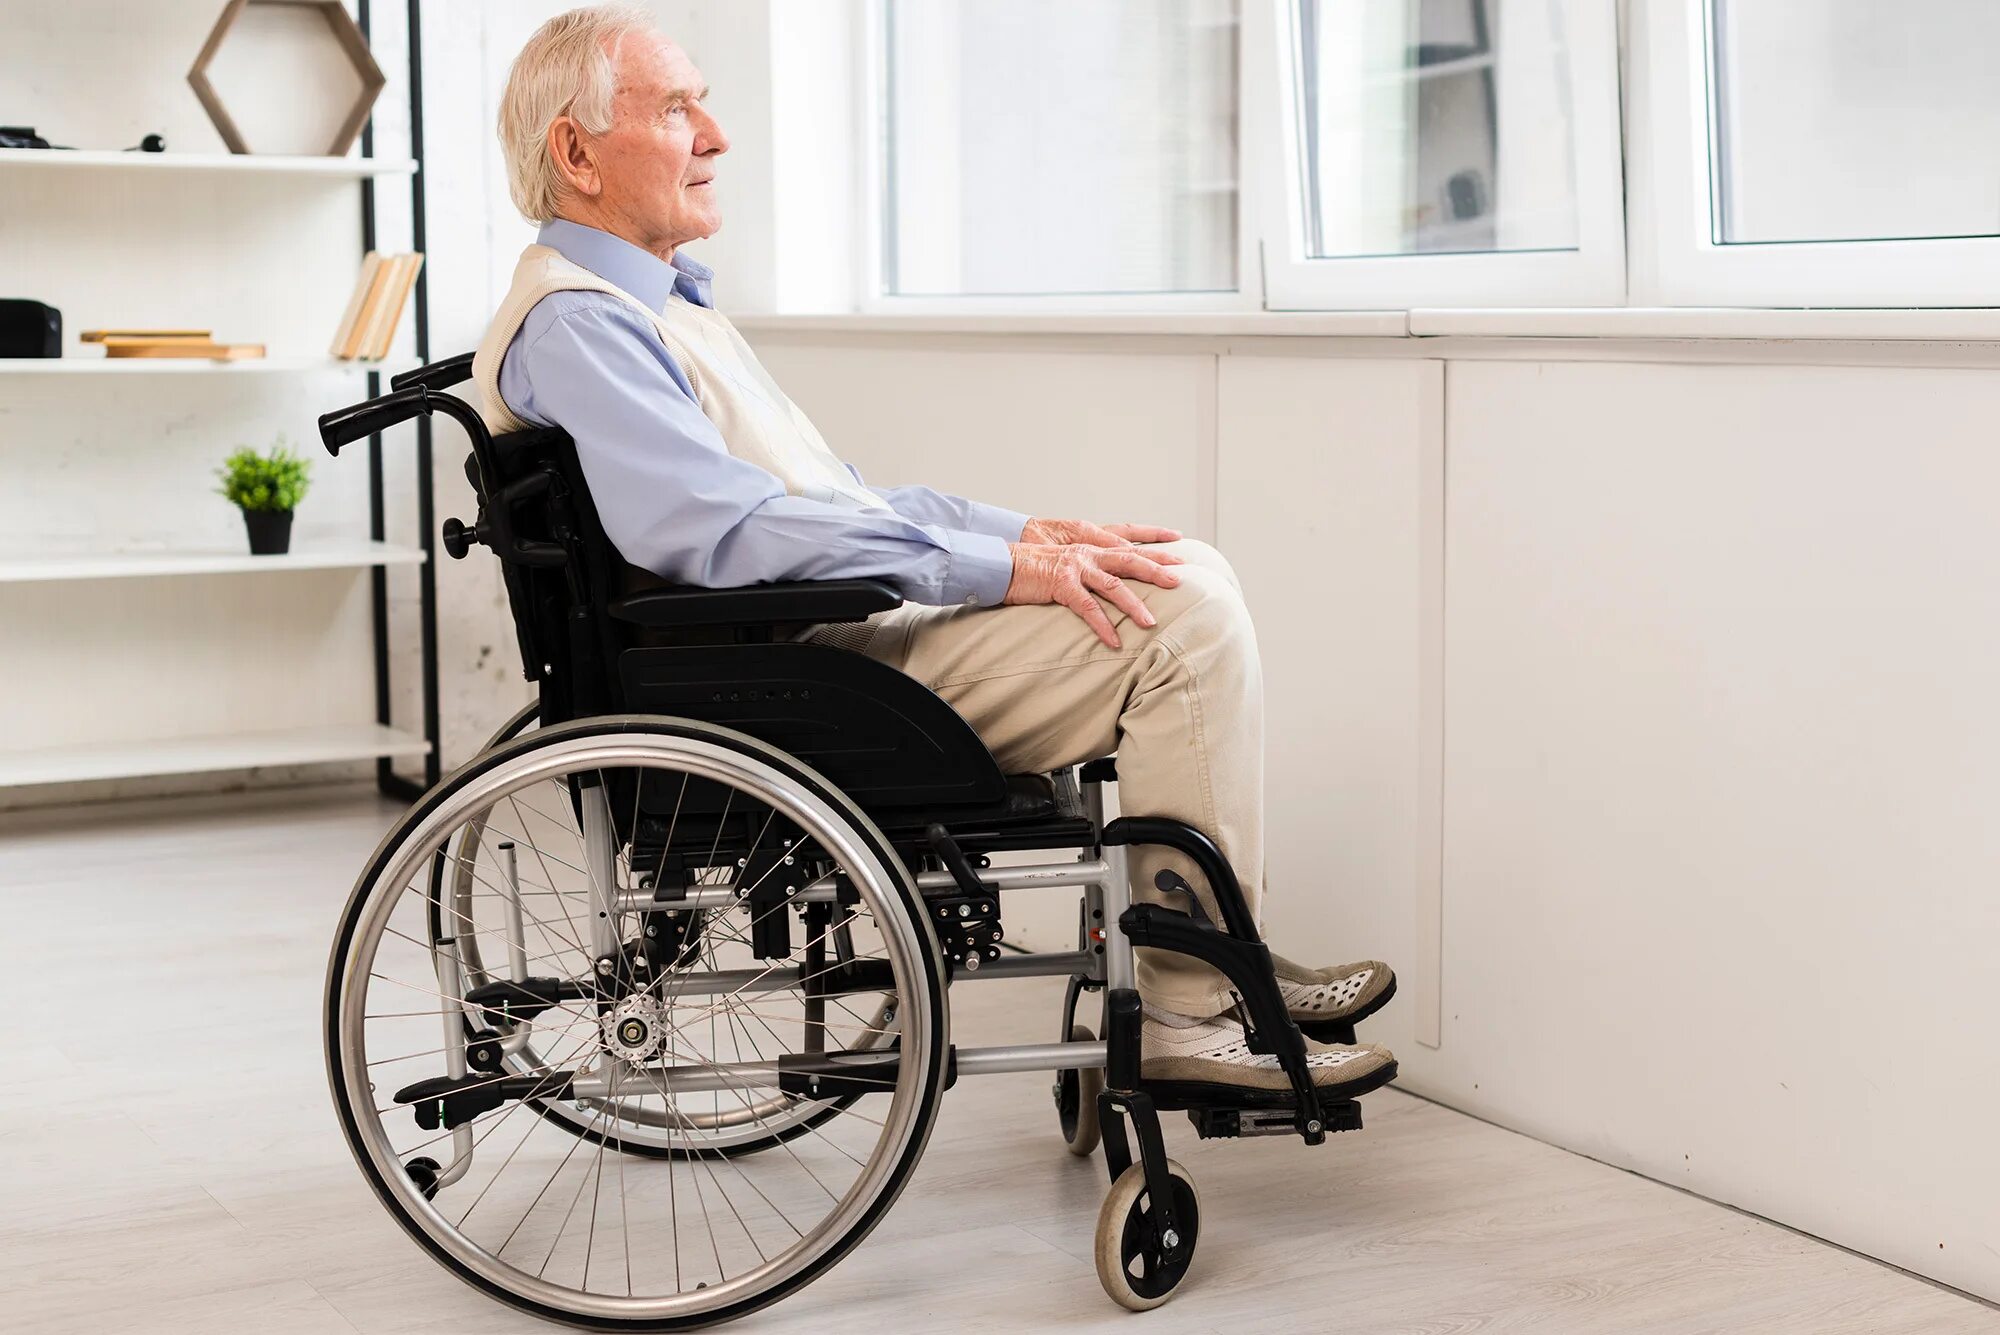 Invalid class. Челик в инвальдной коляске. Человек в инвалидной коляске. Дед на инвалидной коляске. Старик в инвалидной коляске.